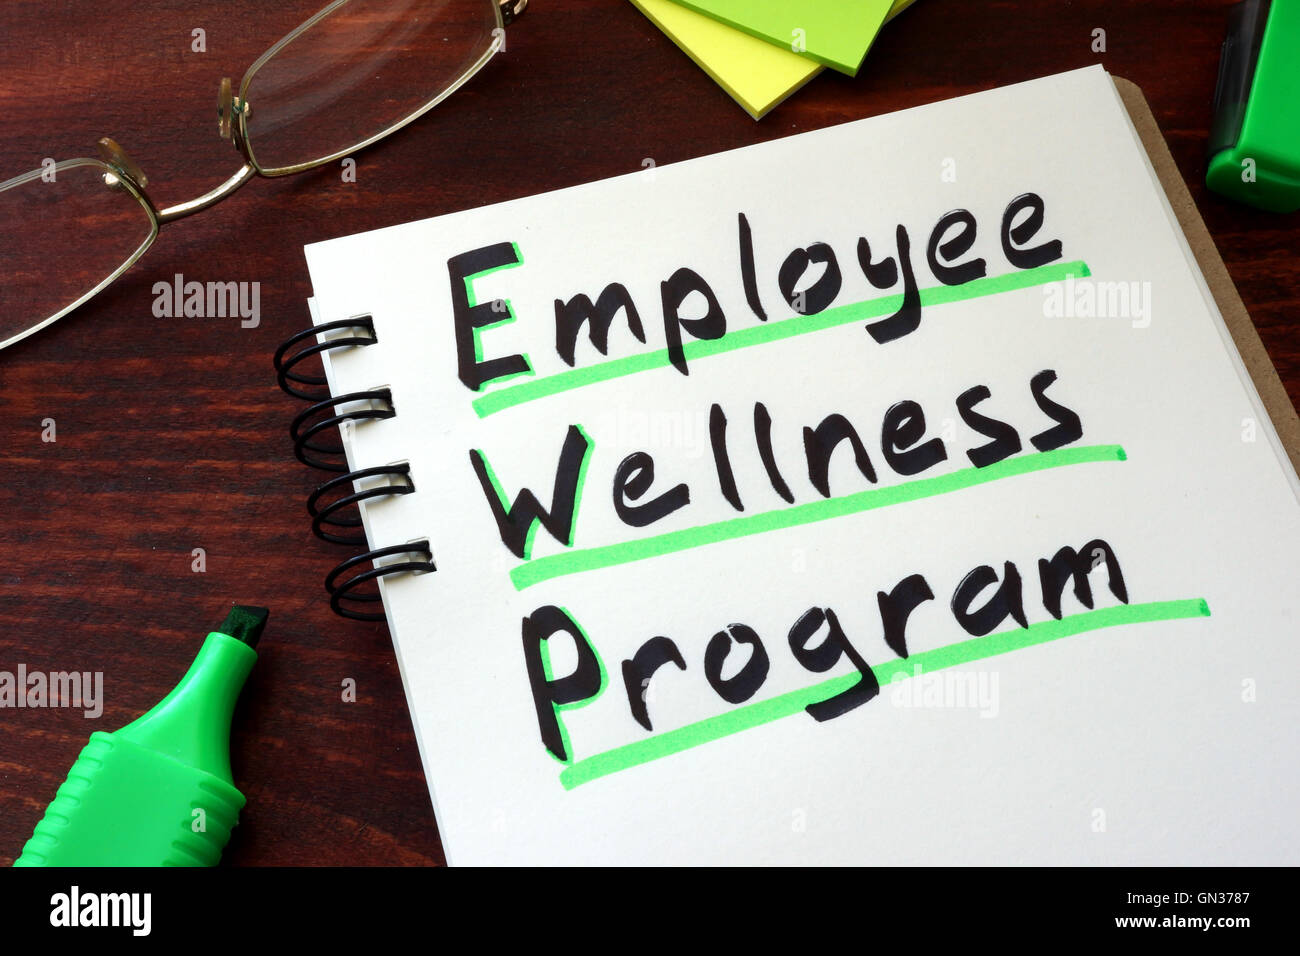 Mitarbeiter-Wellness-Programm auf einem Notizblock mit Marker geschrieben. Stockfoto